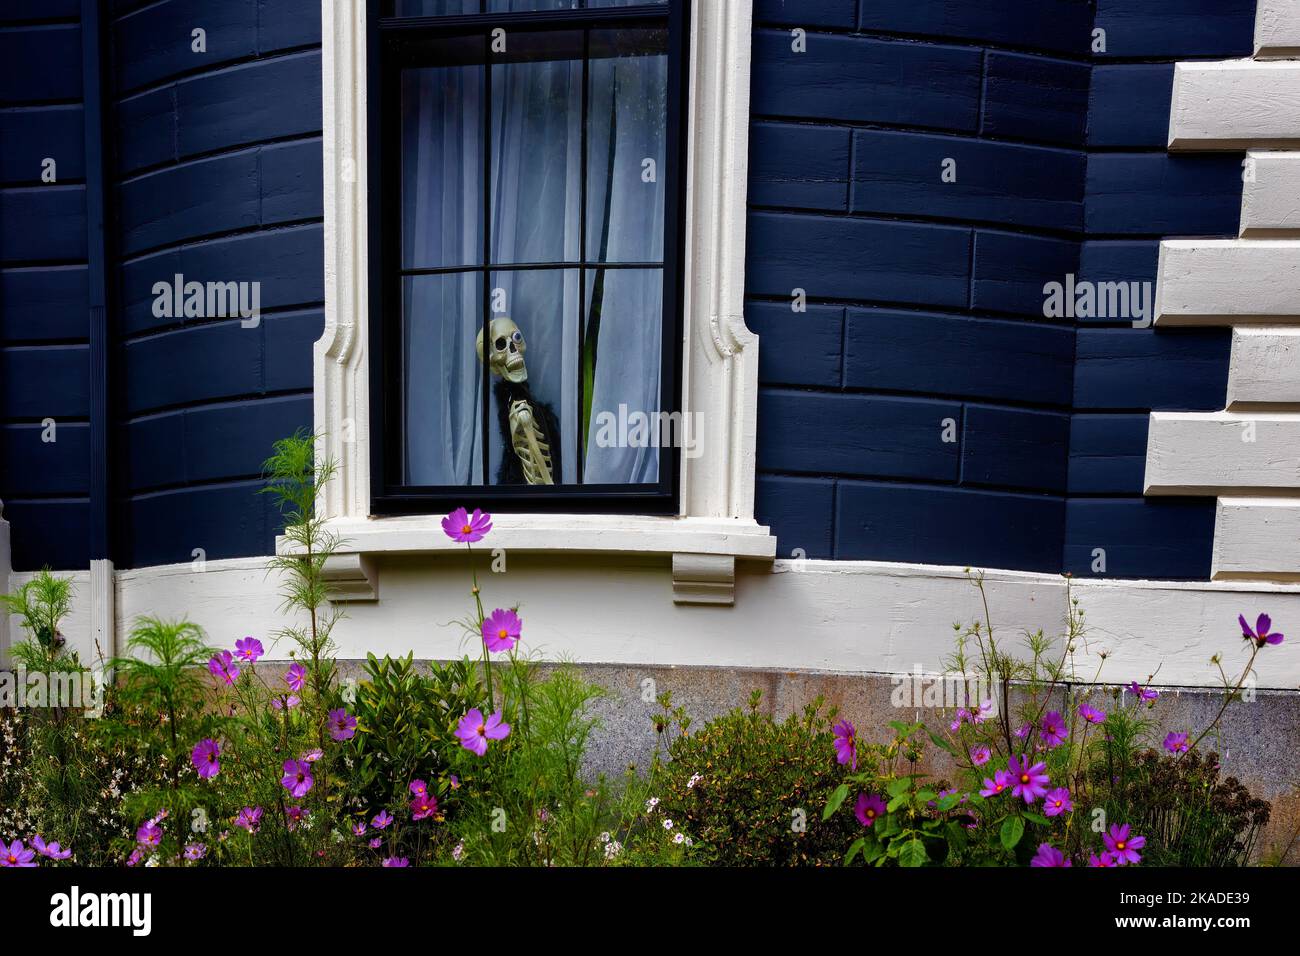 Un squelette peeks entre les rideaux dans une fenêtre d'un bâtiment. Banque D'Images